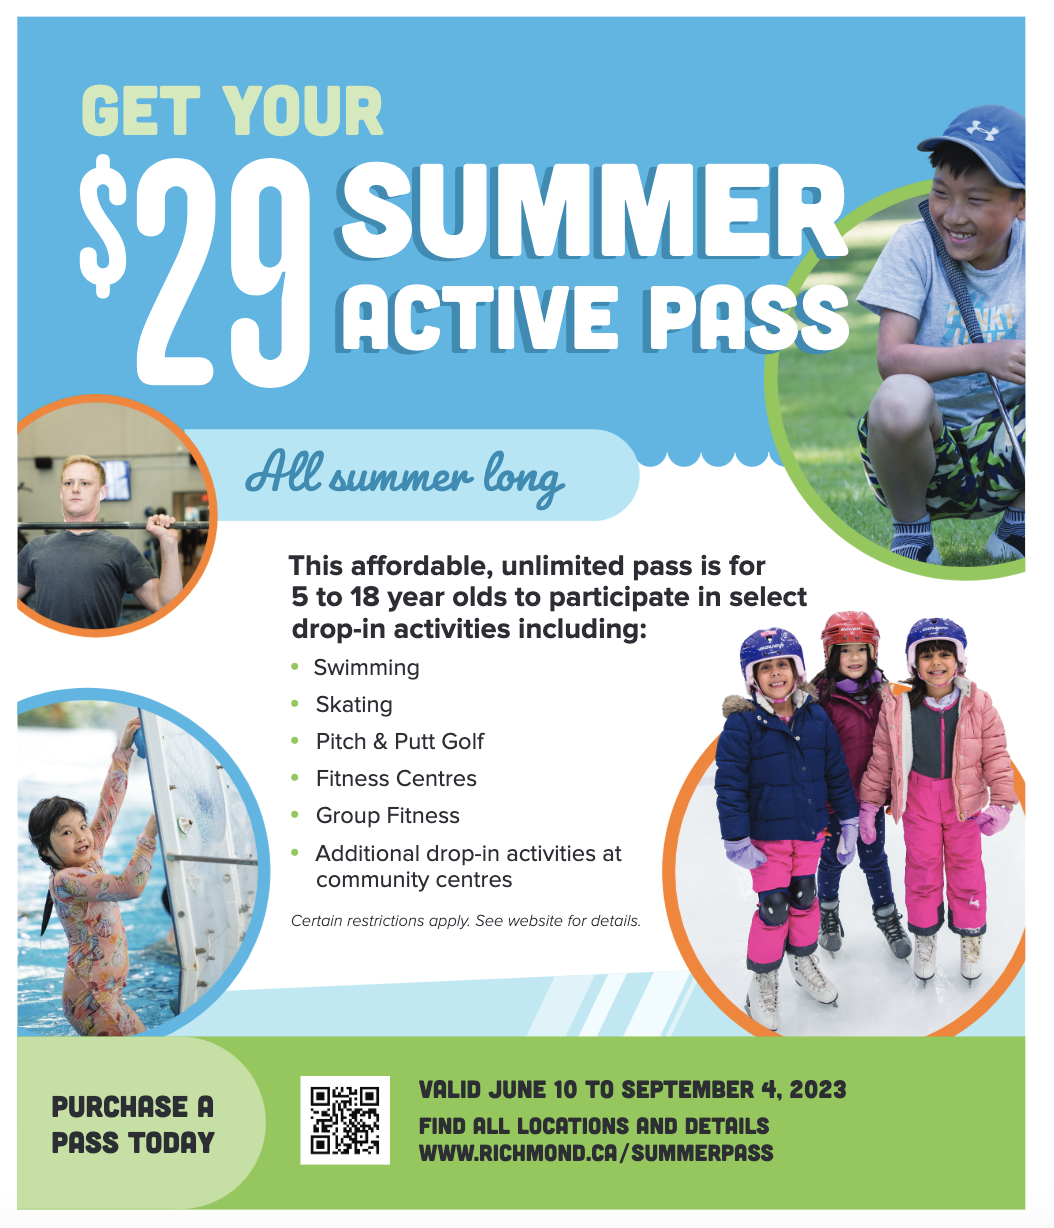 Summer Active Pass